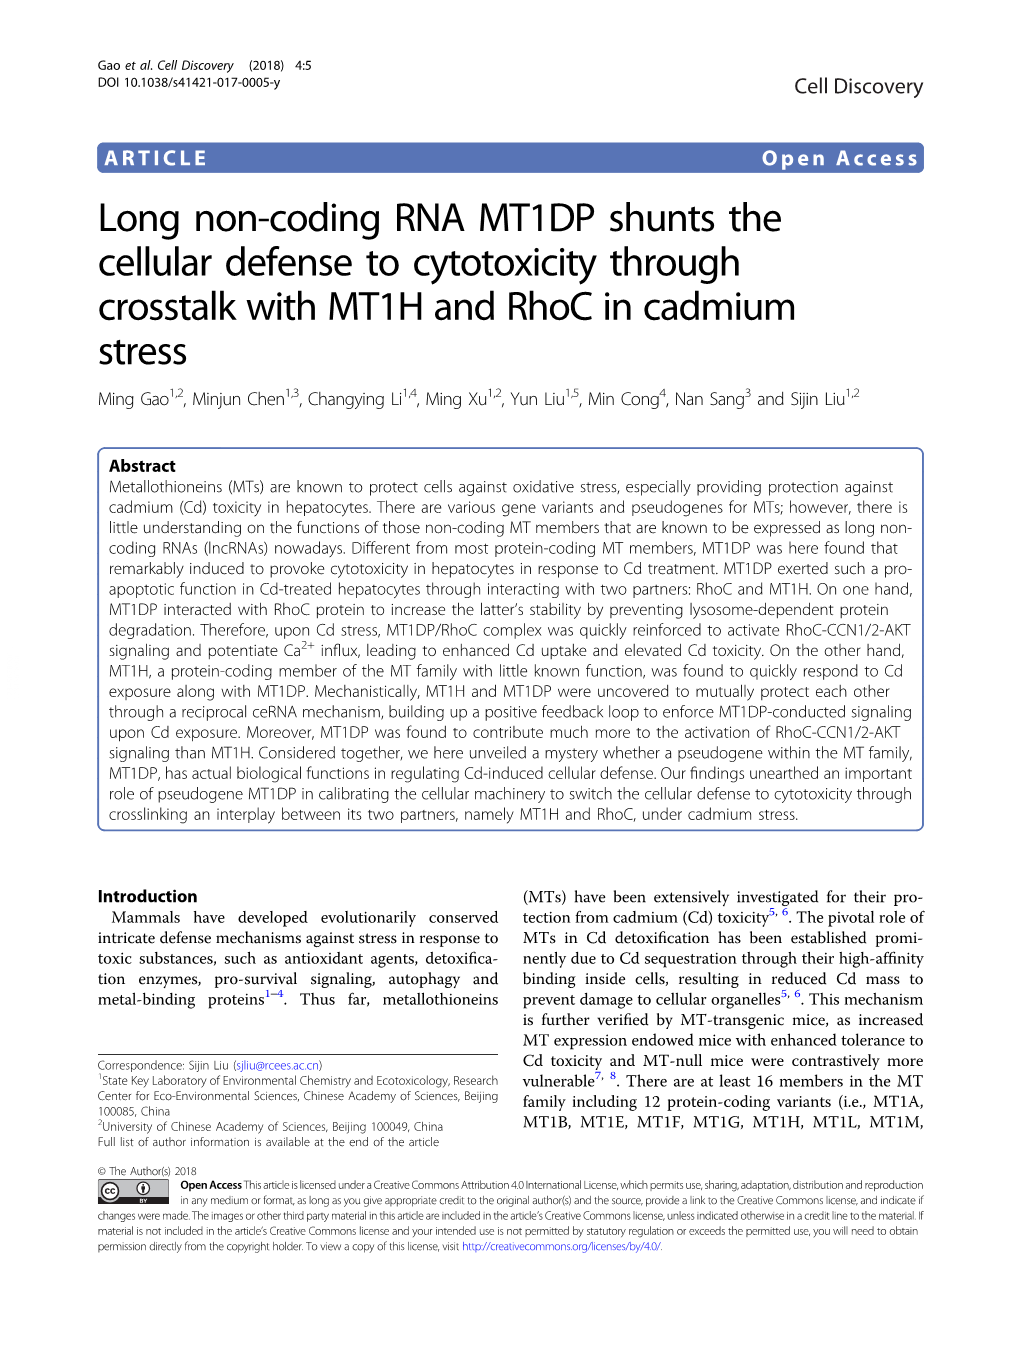 Long Non-Coding RNA MT1DP Shunts the Cellular Defense to Cytotoxicity